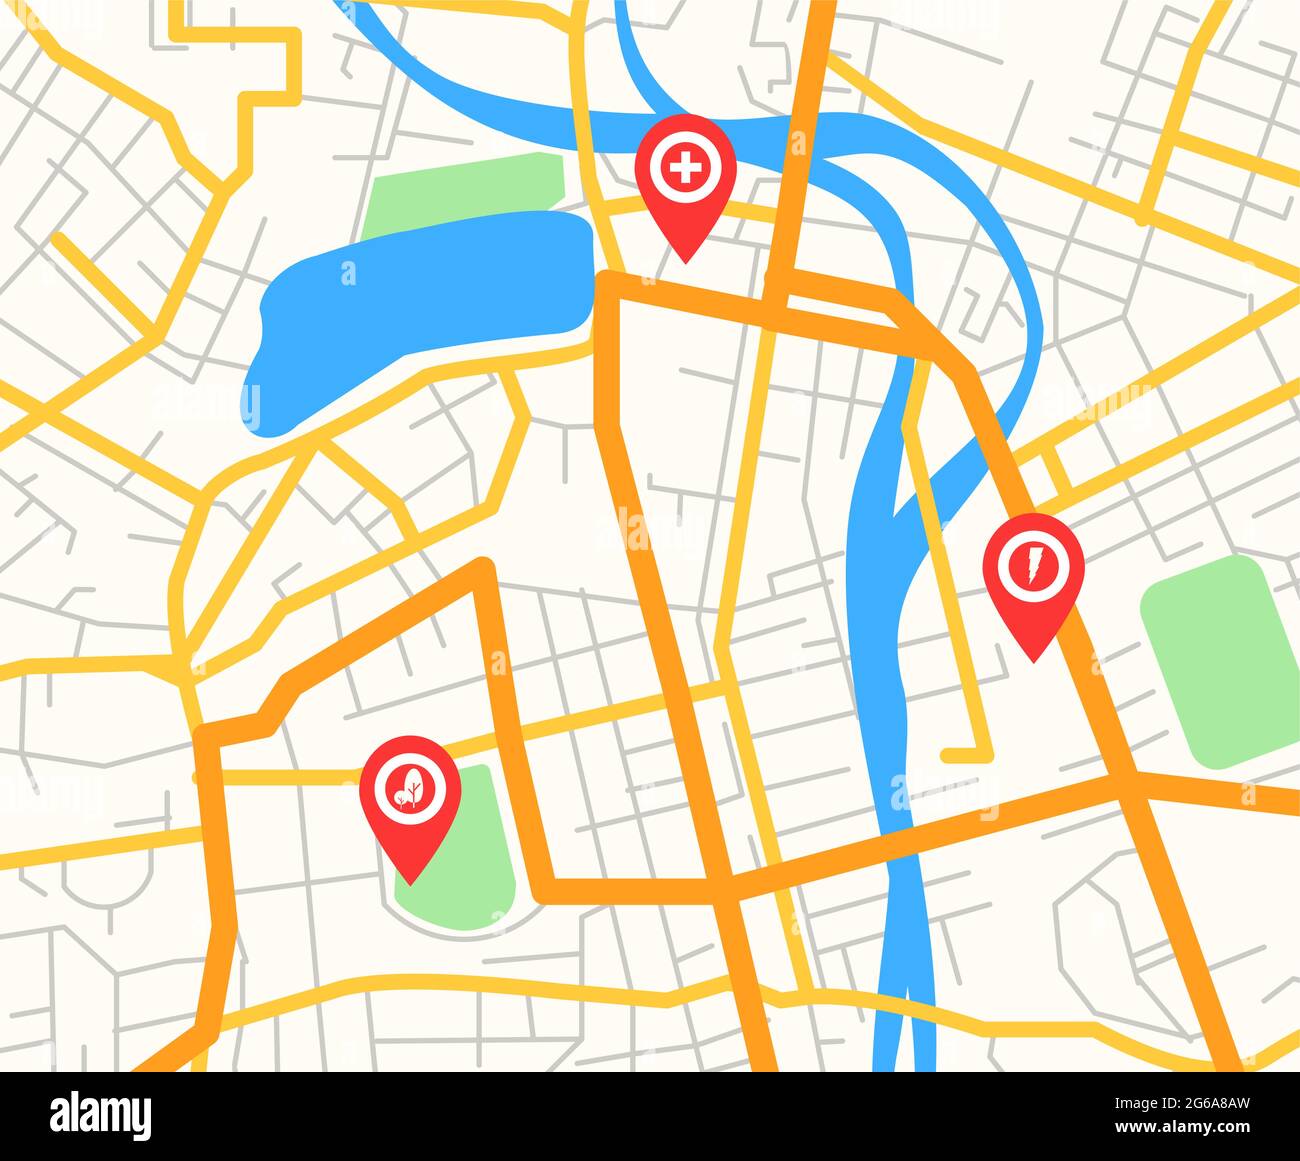 Vektor-Illustration von abstrakten modernen Stadtplan mit roten Pin-Zeigern und Infrastruktur-Icons, Navigator-Konzept, flache Cartoon-Stil. Stock Vektor